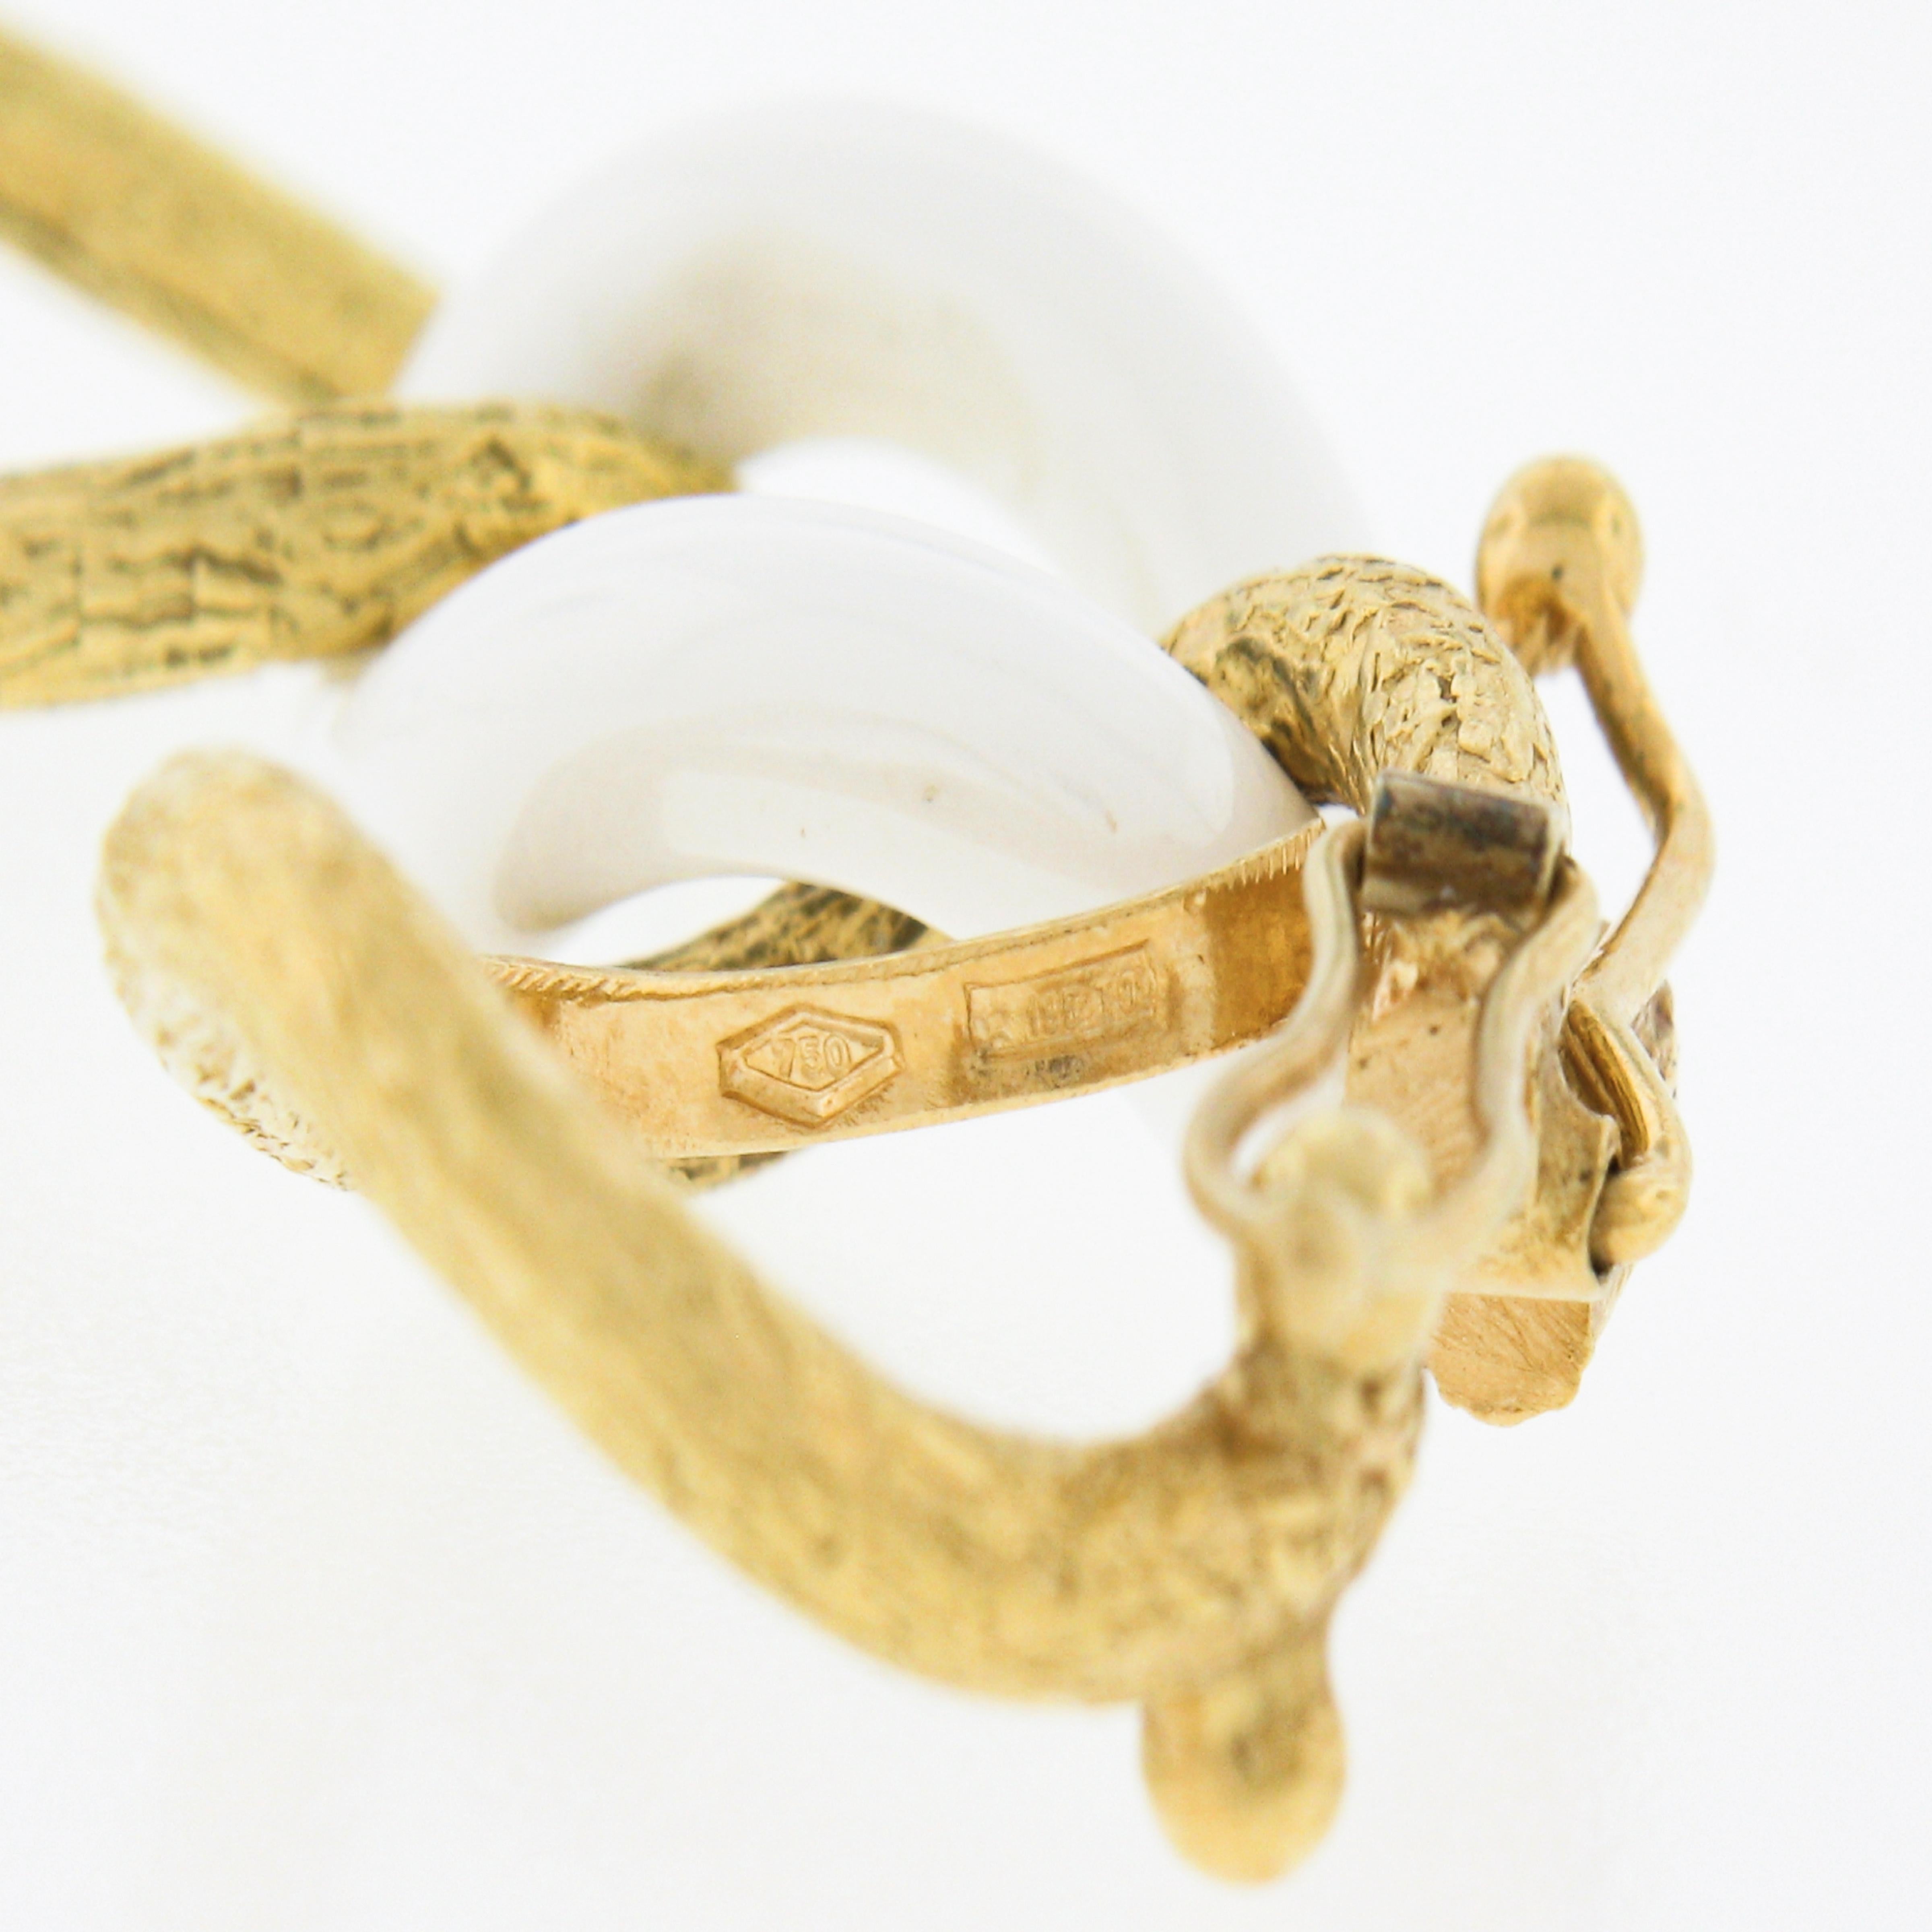 Women's Italian Giovanni Marchiso White Ceramic & 18k Gold Textured Link Chain Bracelet For Sale